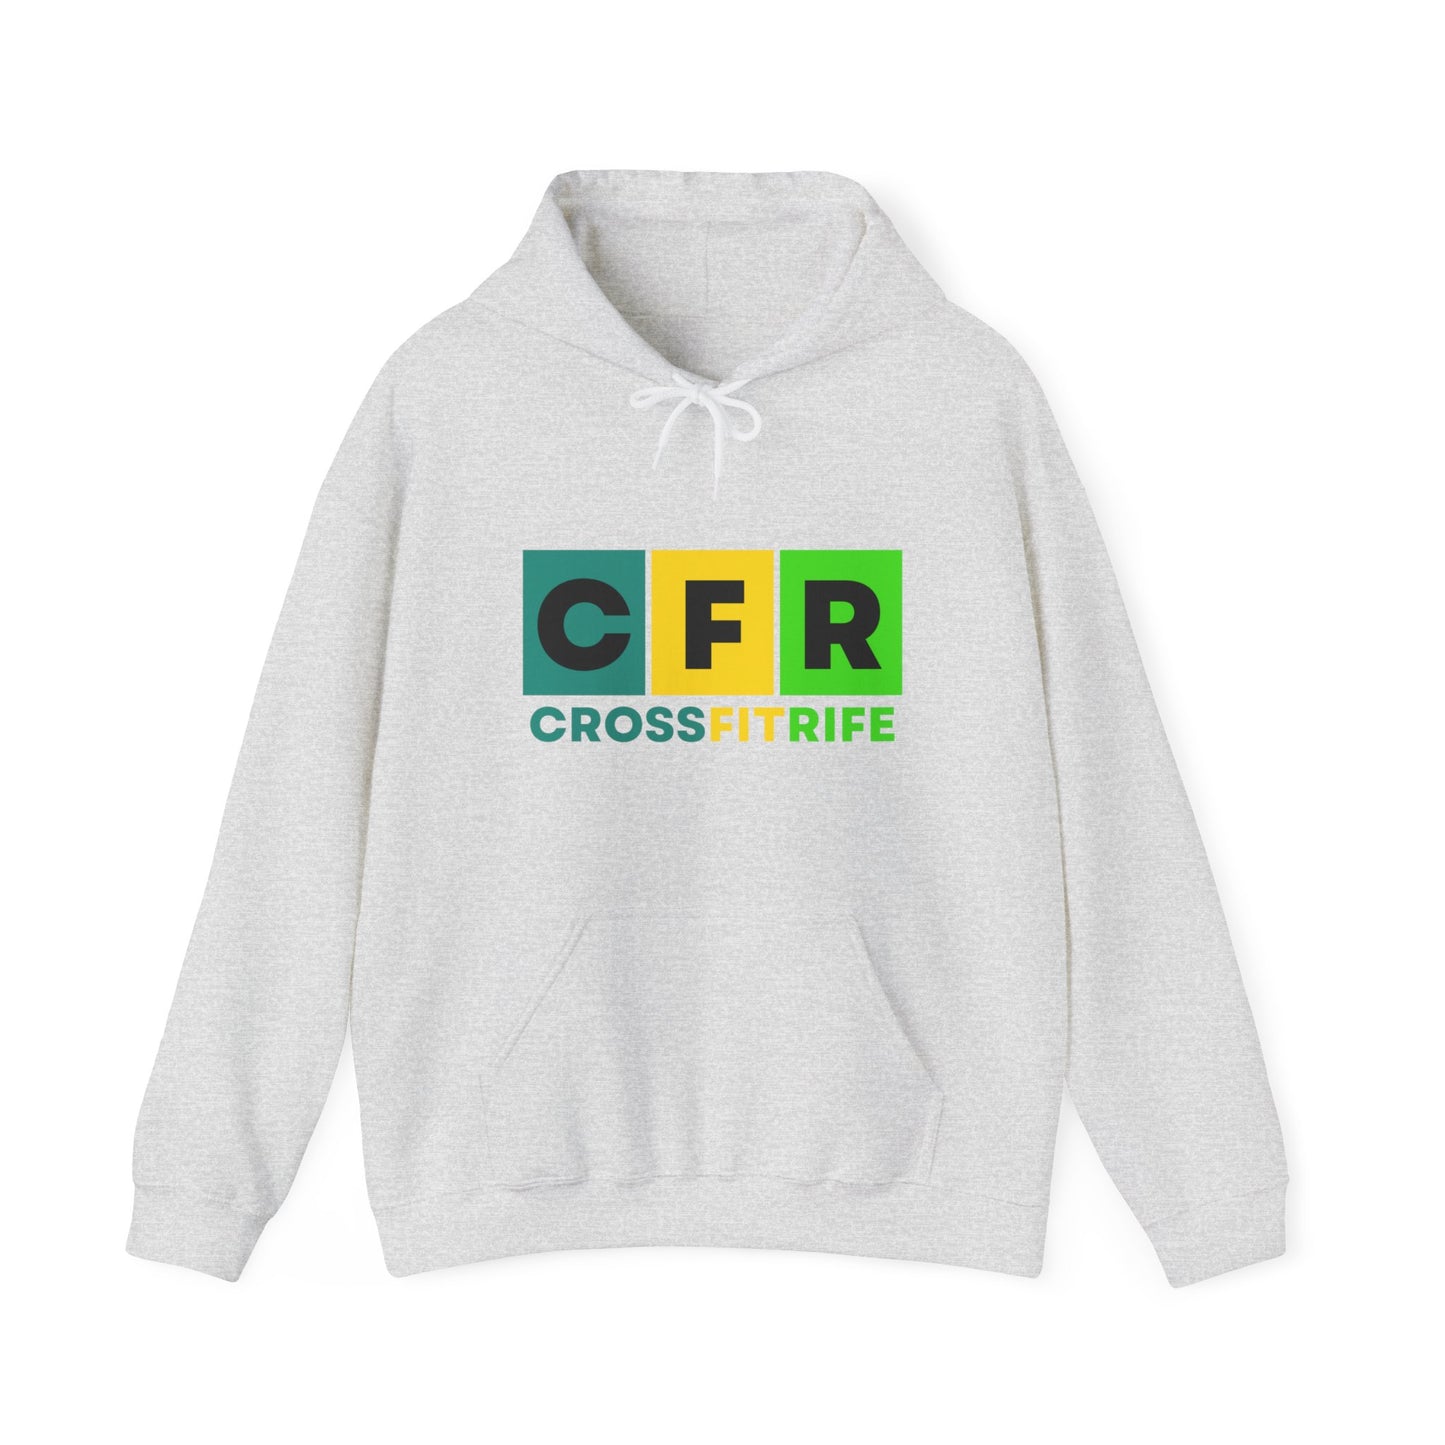 CFR Block Hoodie